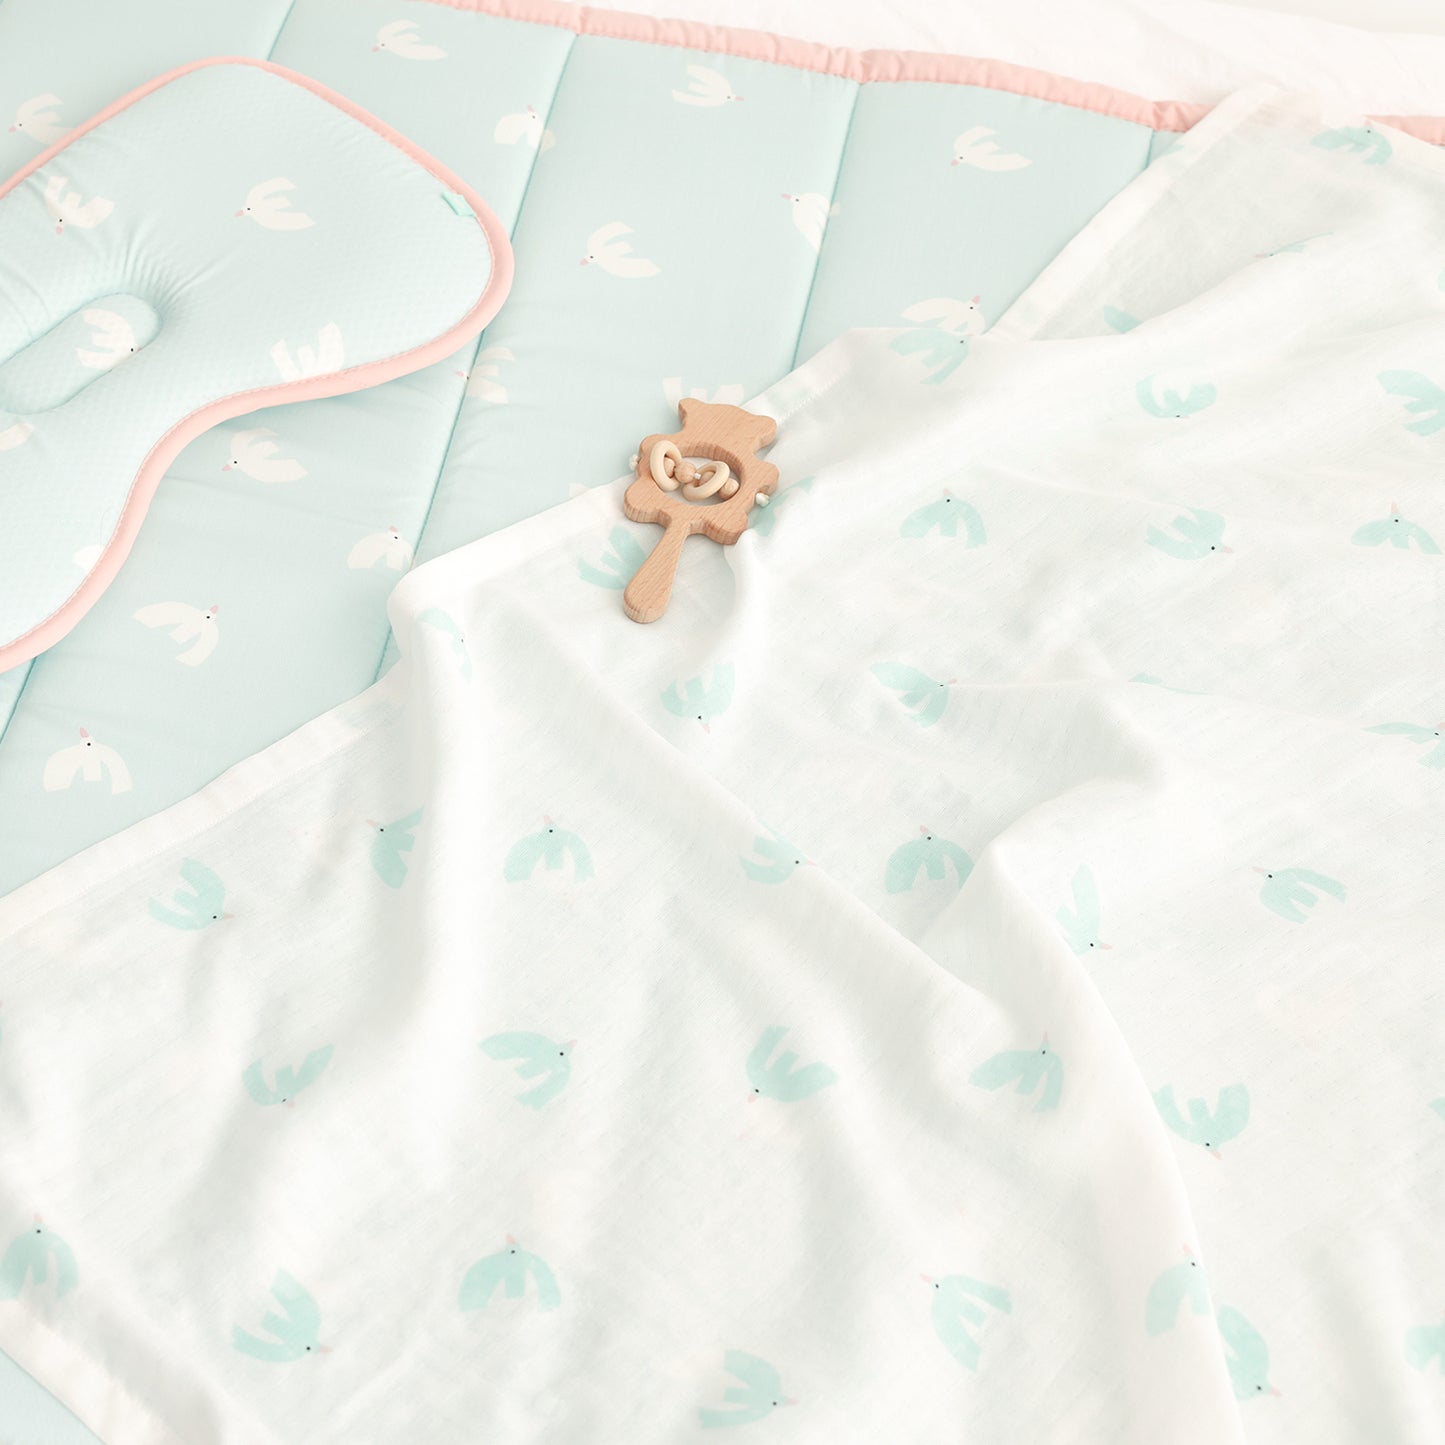 BambooBebe Baby Gauze Blanket